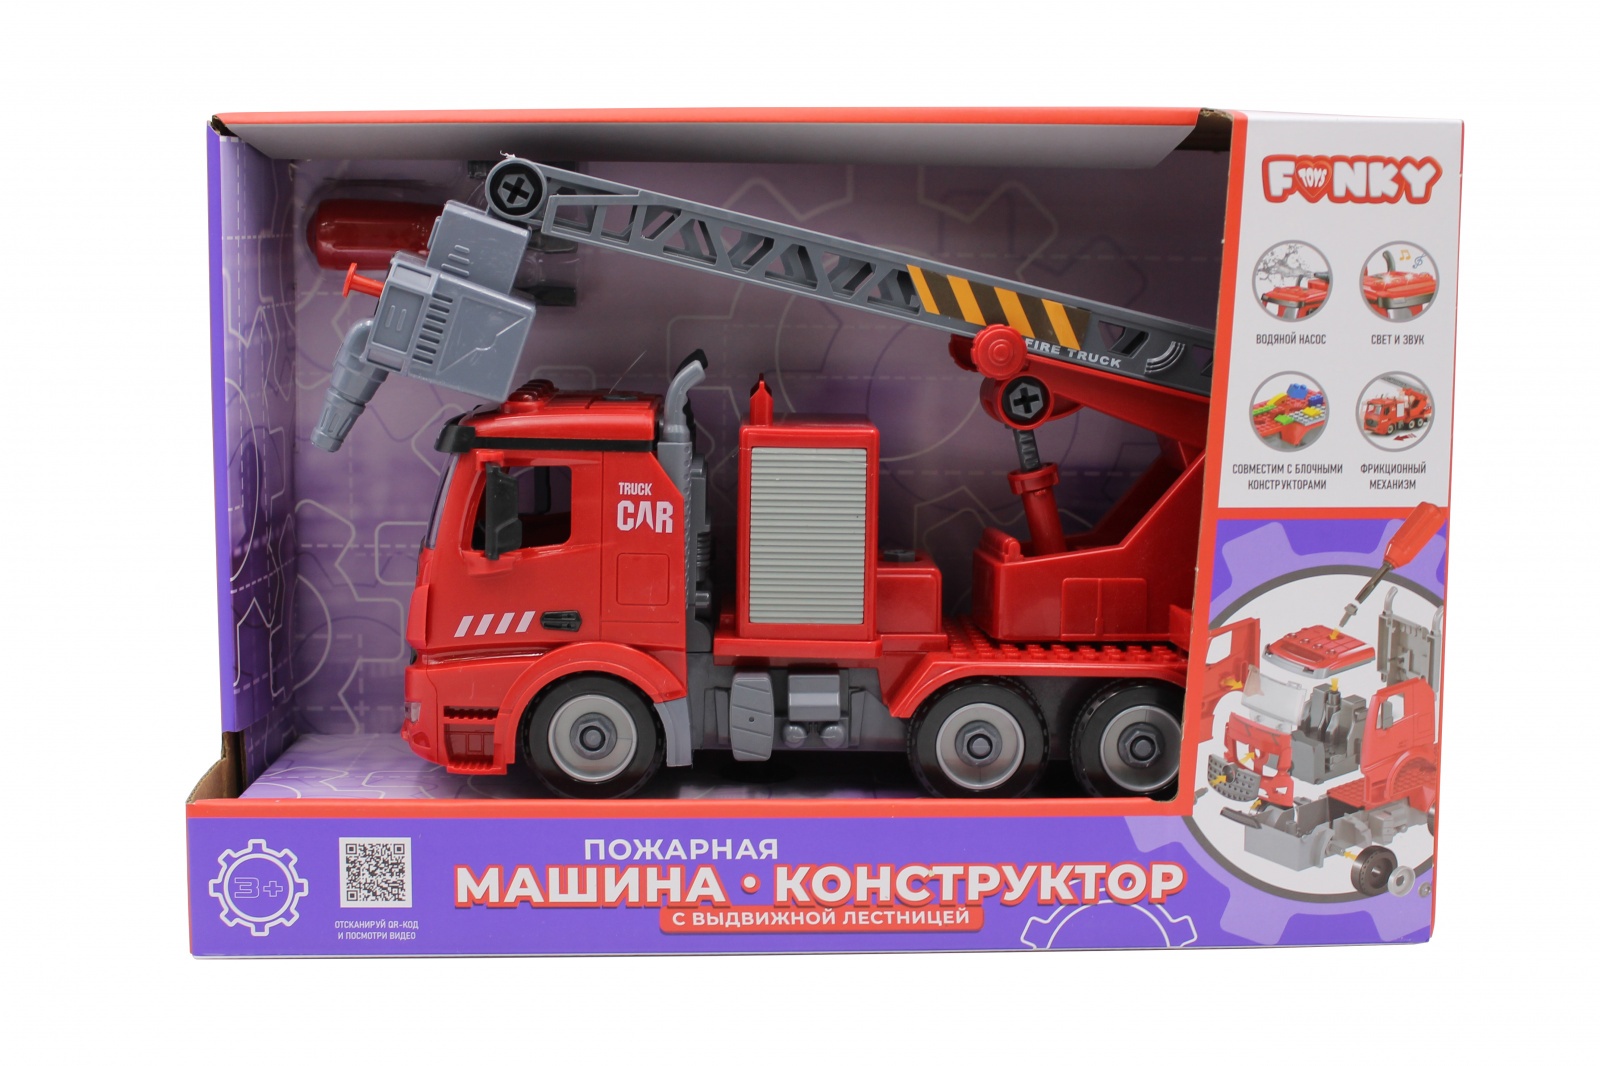 Пожарная машина-конструктор Funky Toys фрикционный, свет, звук, вода, 1:12